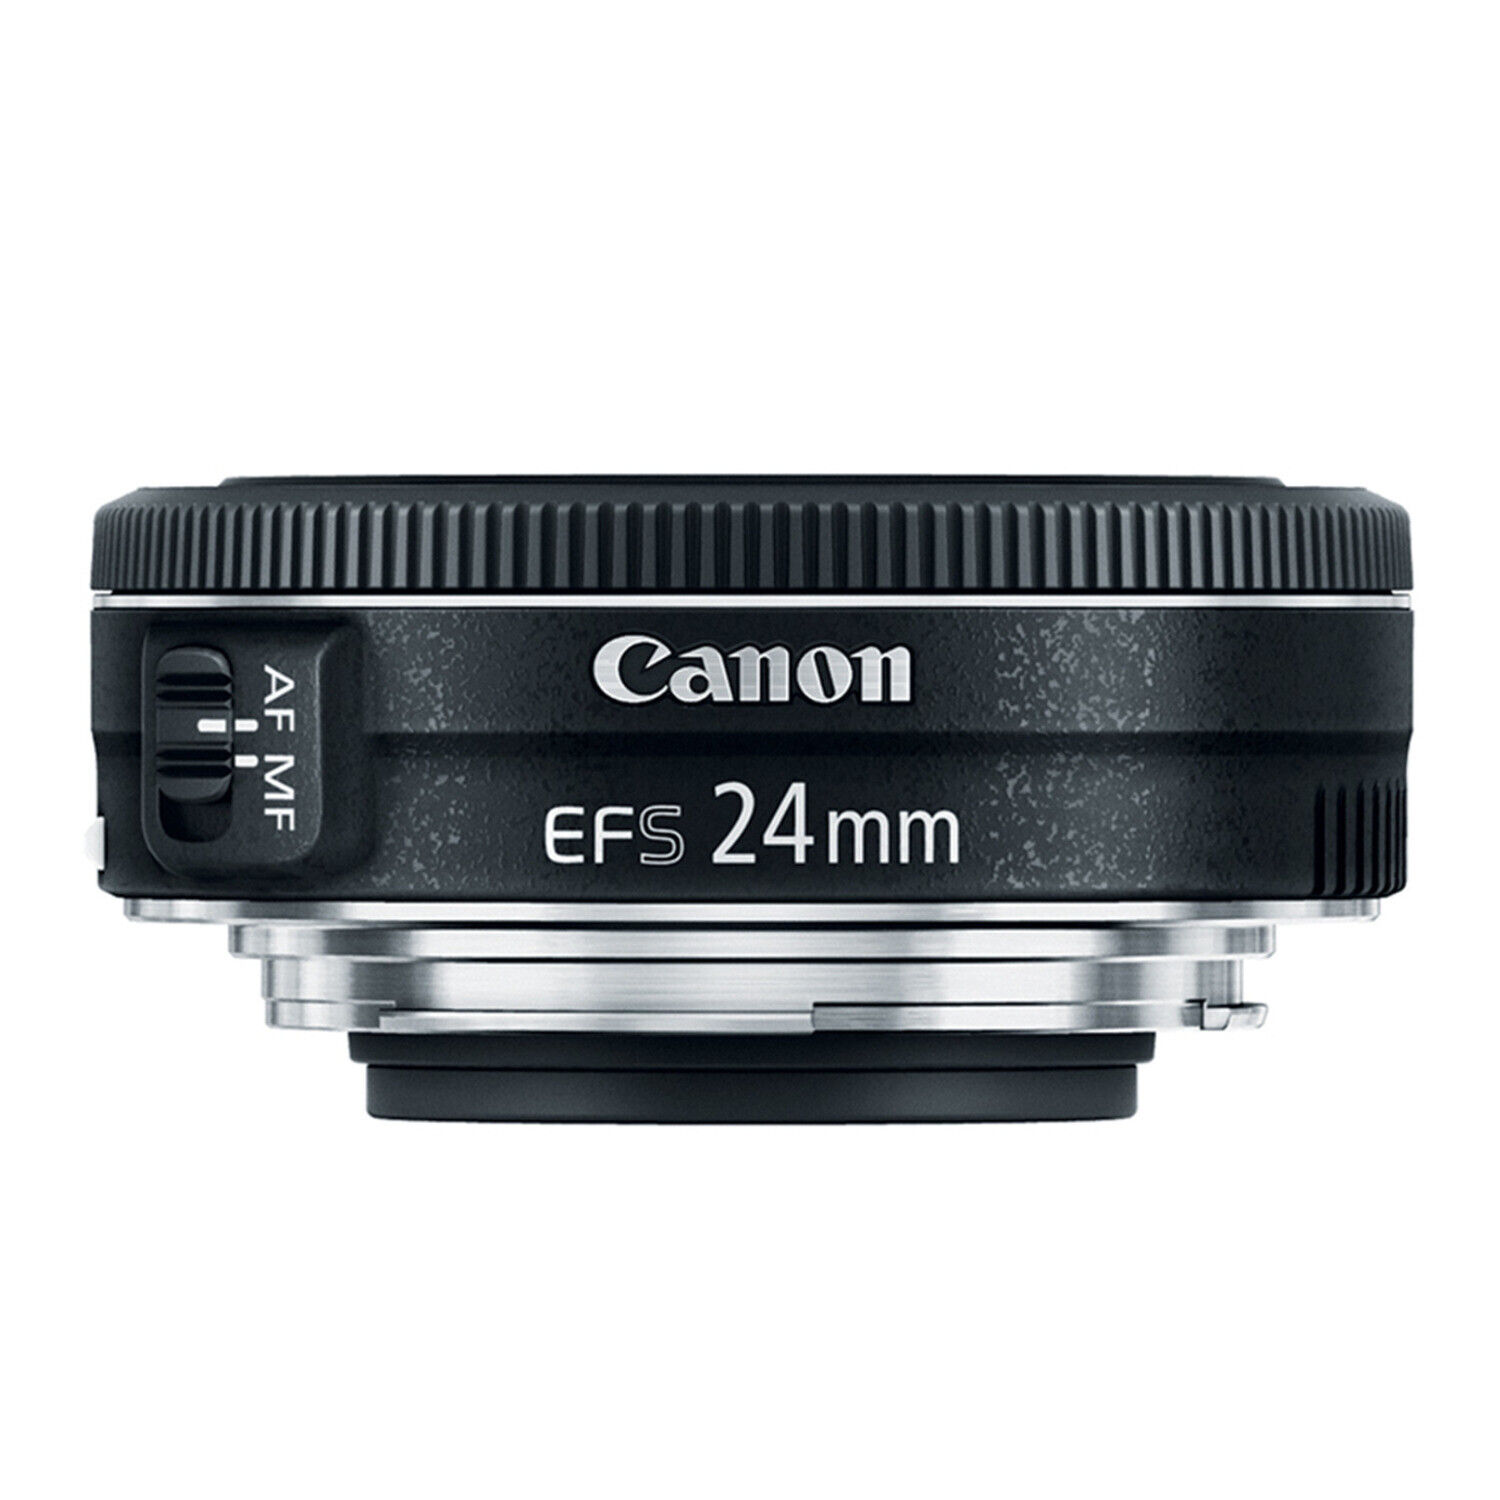 Lenses Canon EF-S 24mm f/2.8 STM